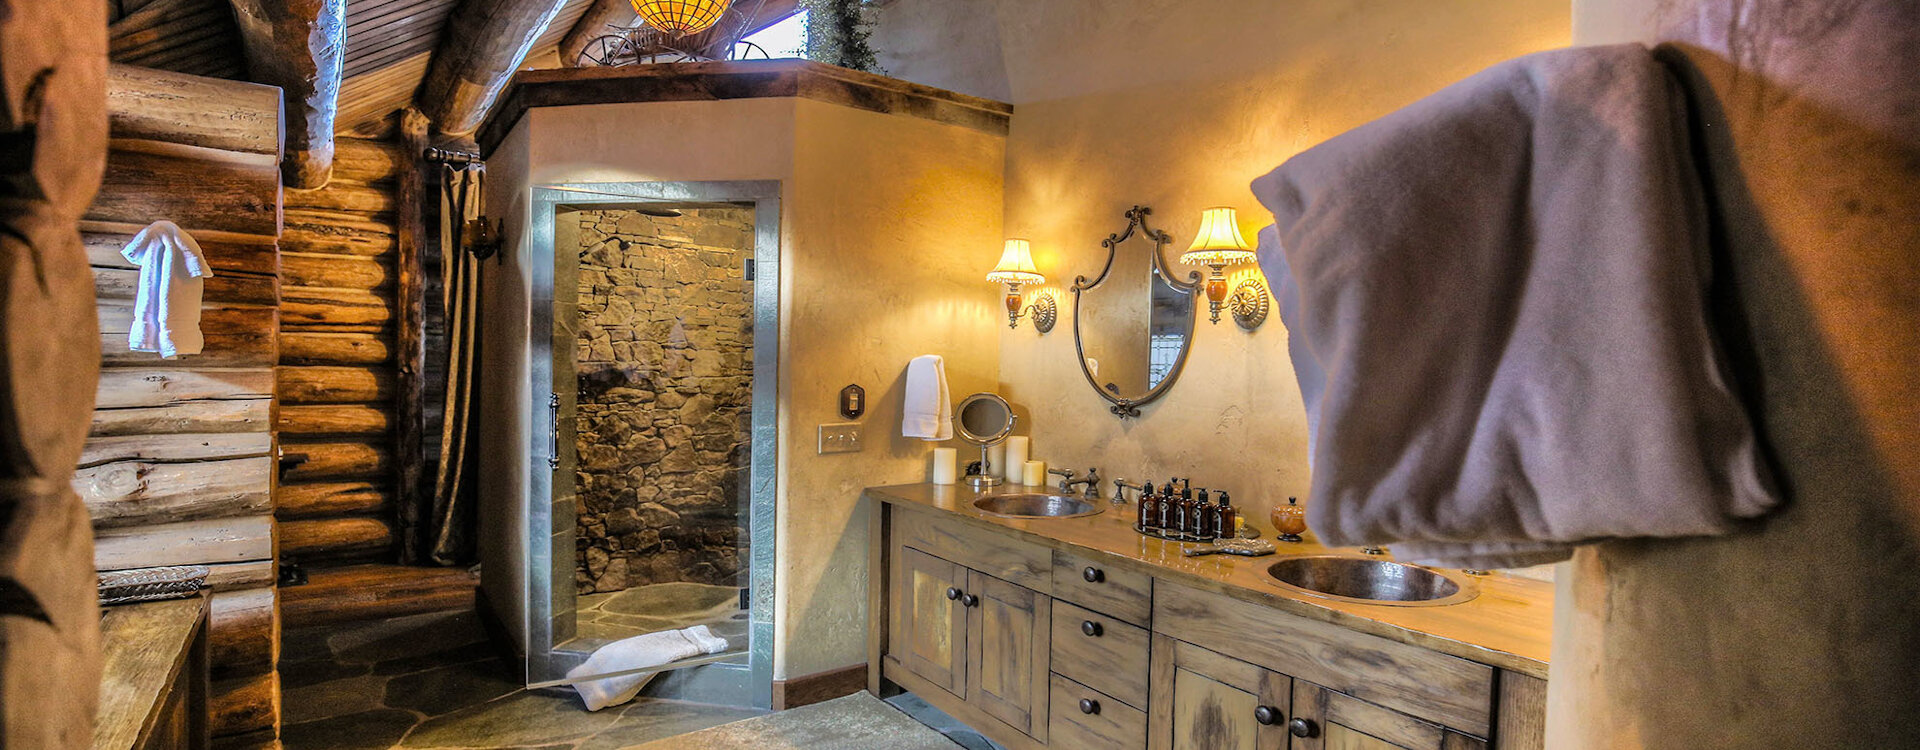 22-telluride-castlewood-guest-bathroom-8-vanity-shower